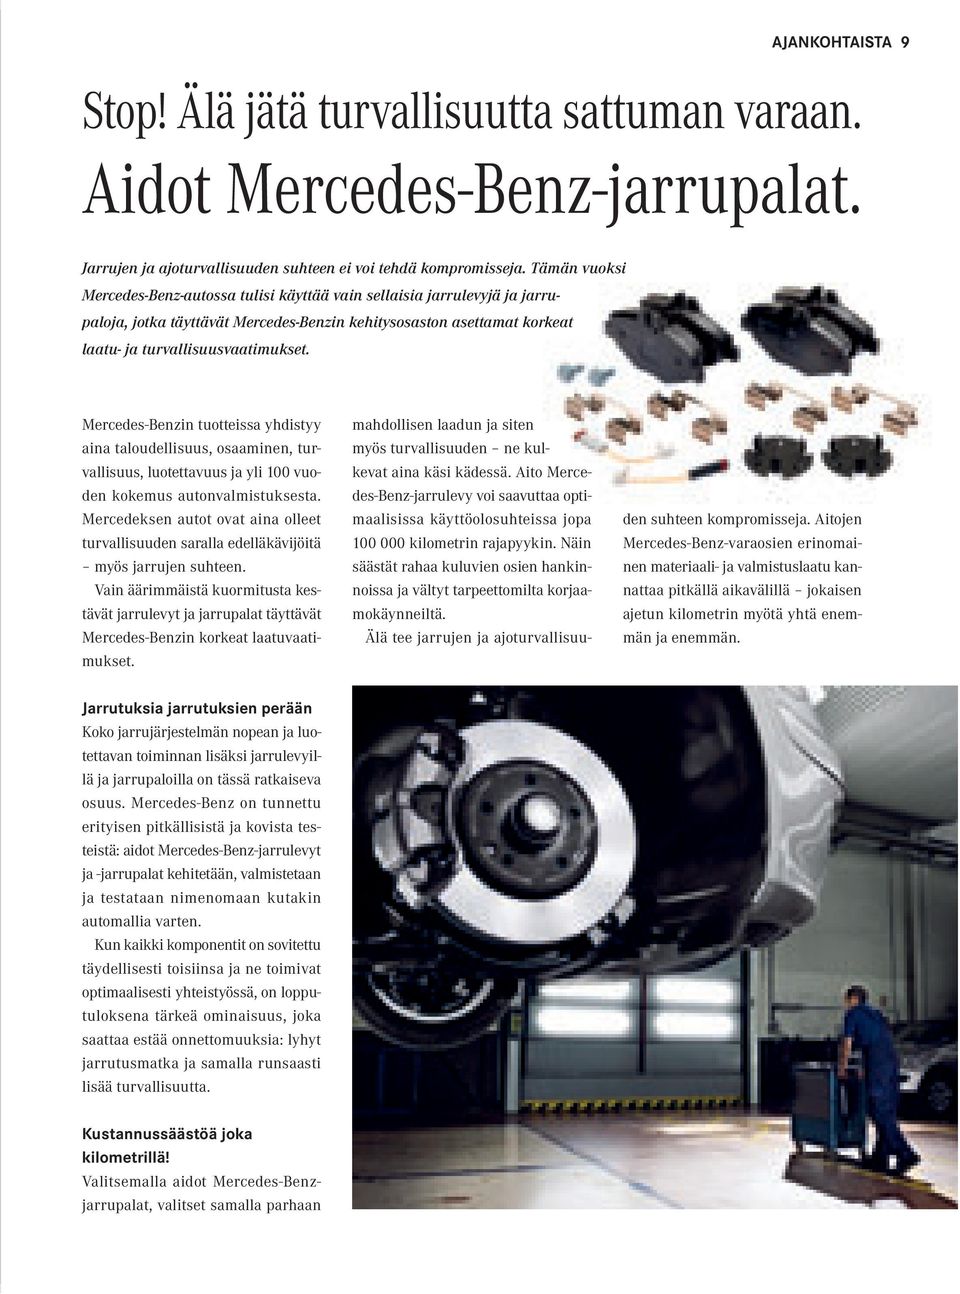 Mercedes-Benzin tuotteissa yhdistyy aina taloudellisuus, osaaminen, turvallisuus, luotettavuus ja yli 100 vuoden kokemus autonvalmistuksesta.